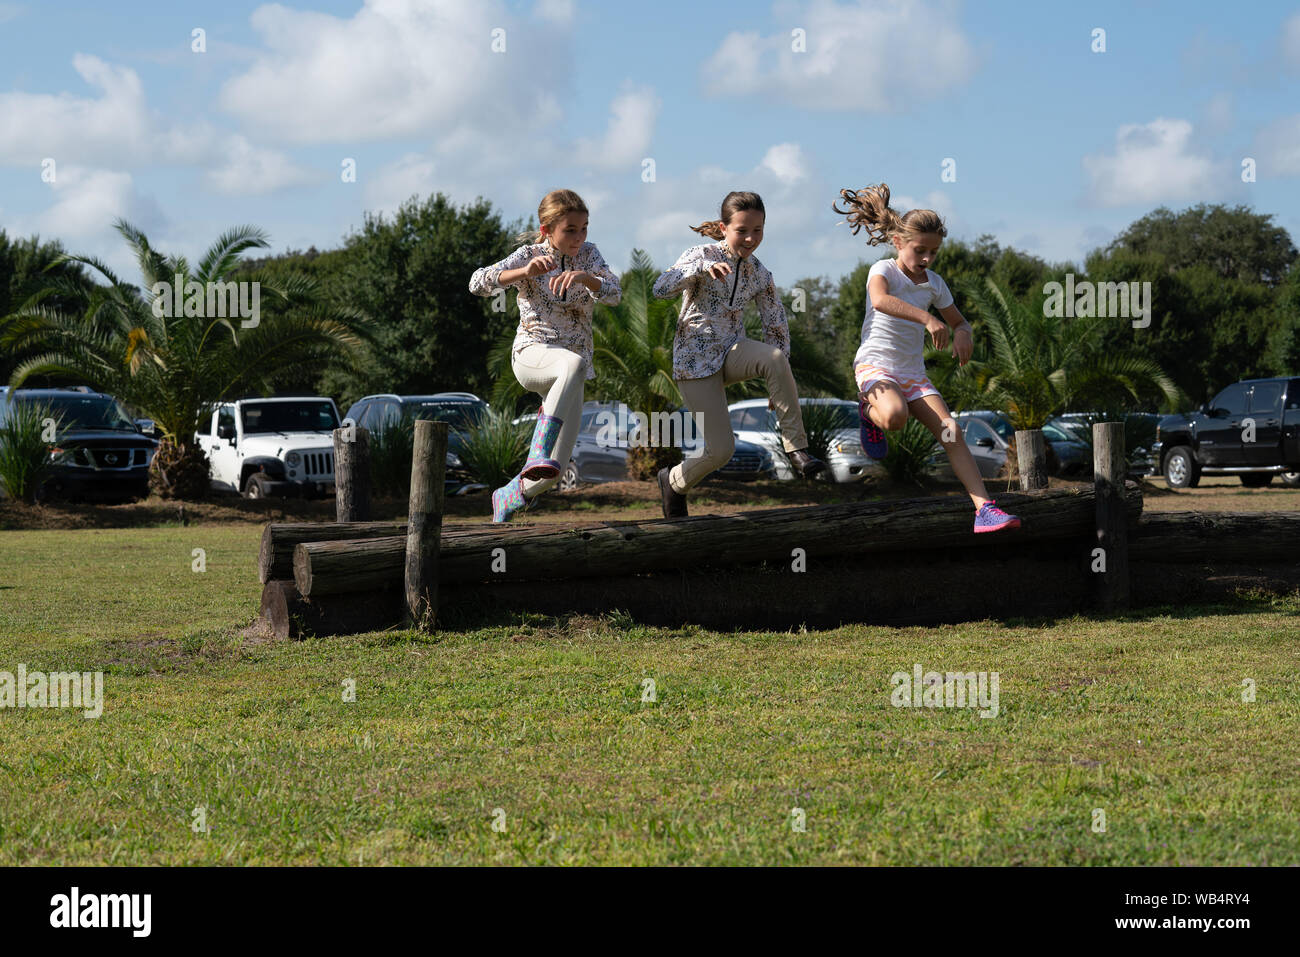 Drei junge kaukasische Mädchen sind Sprung über einen zusammen an einem Pferd zeigen, während sie darauf warten, für ihre Mannschaftskameraden zu konkurrieren Stockfoto